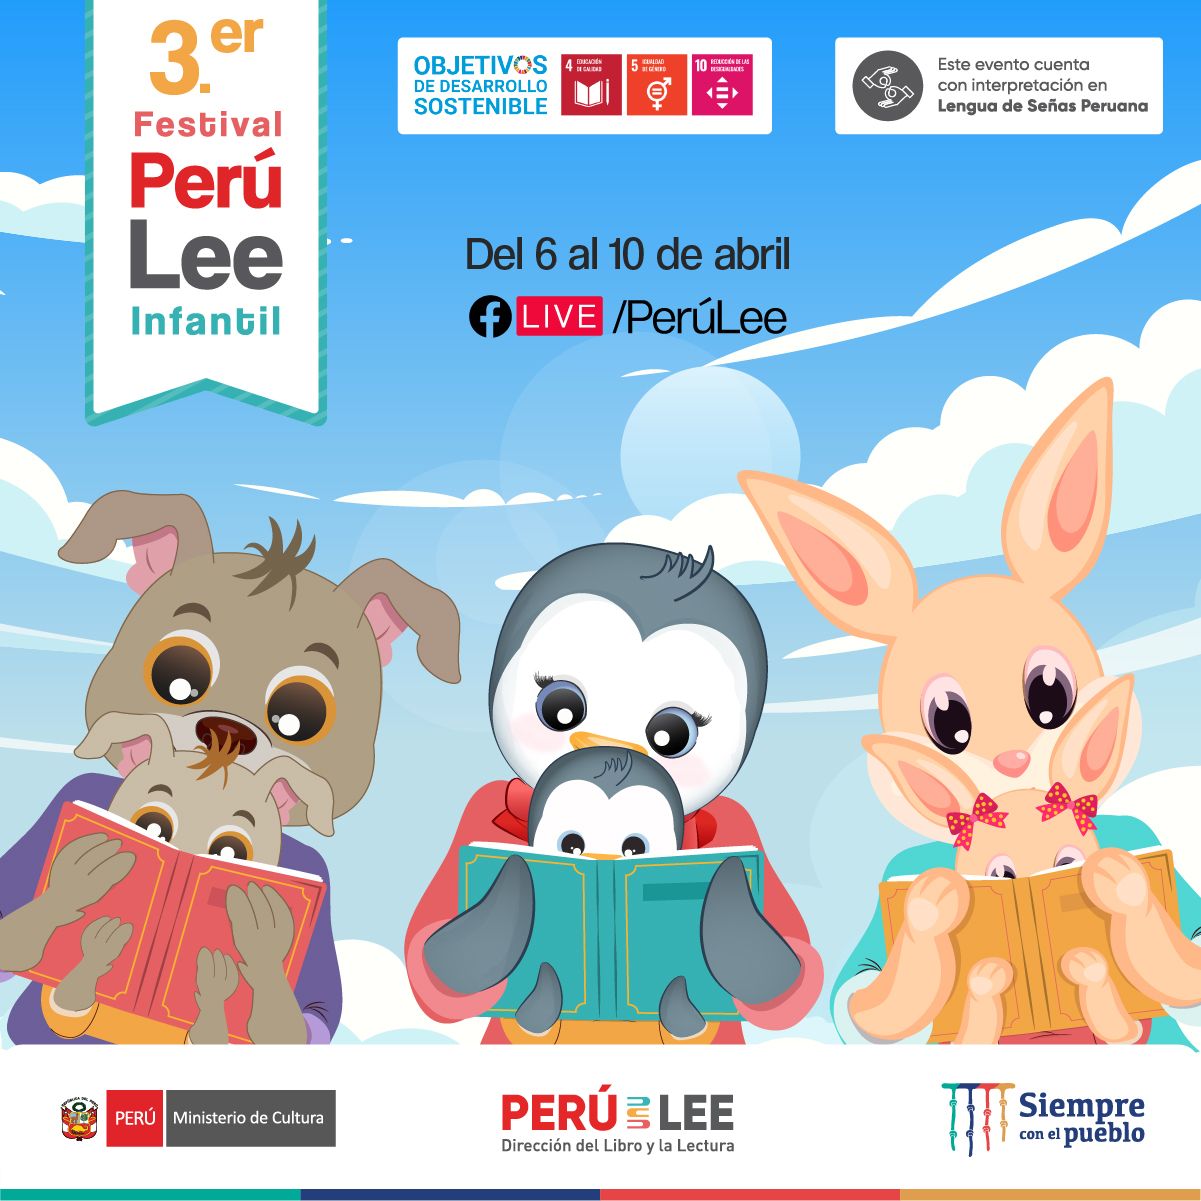 3Er Festival Perú Lee Infantil